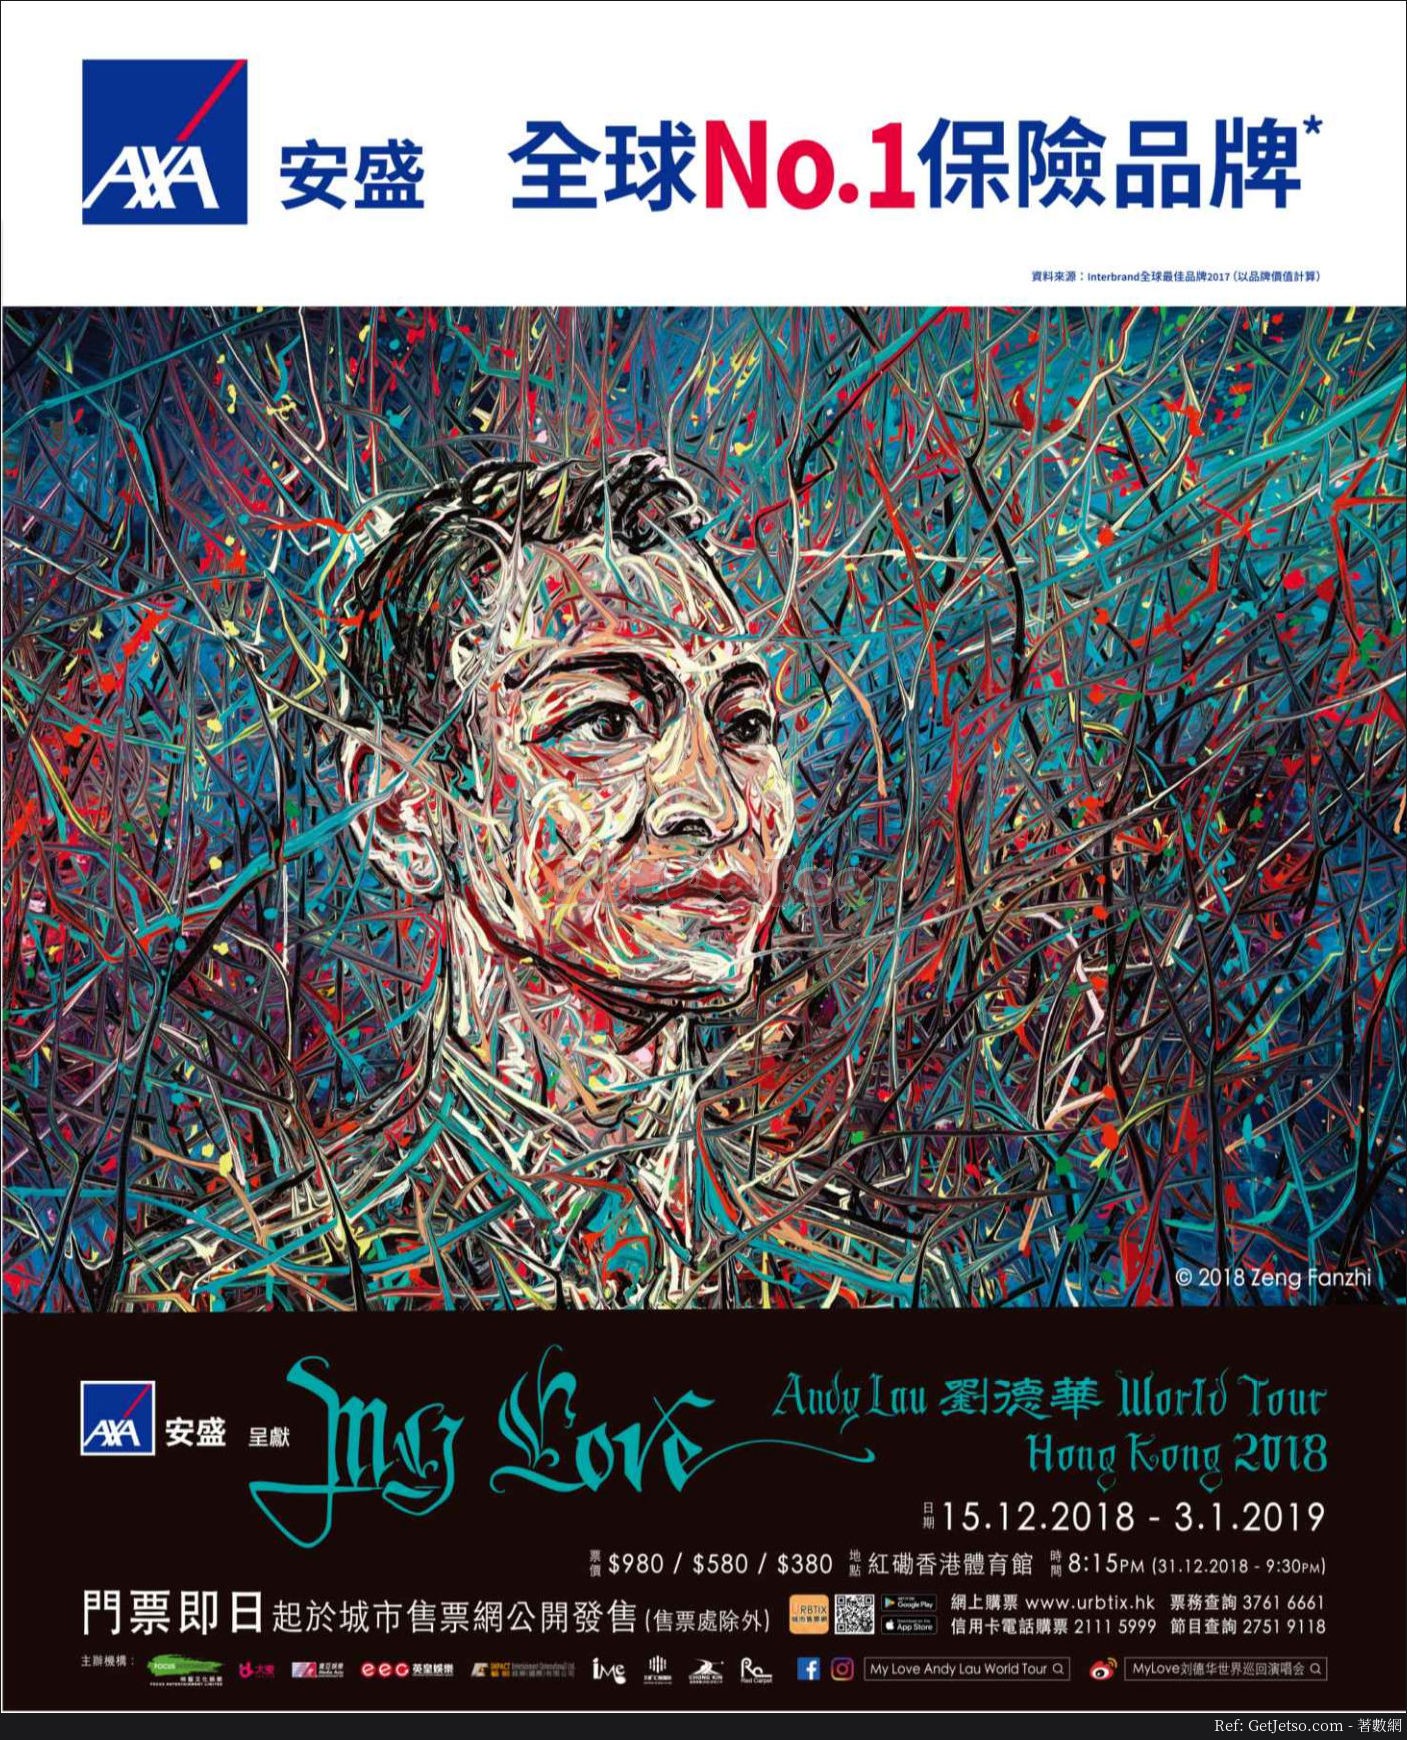 My Love Andy Lau 劉德華World Tour ·Hong Kong 2018門票公開發售(18年9月4日起)圖片2